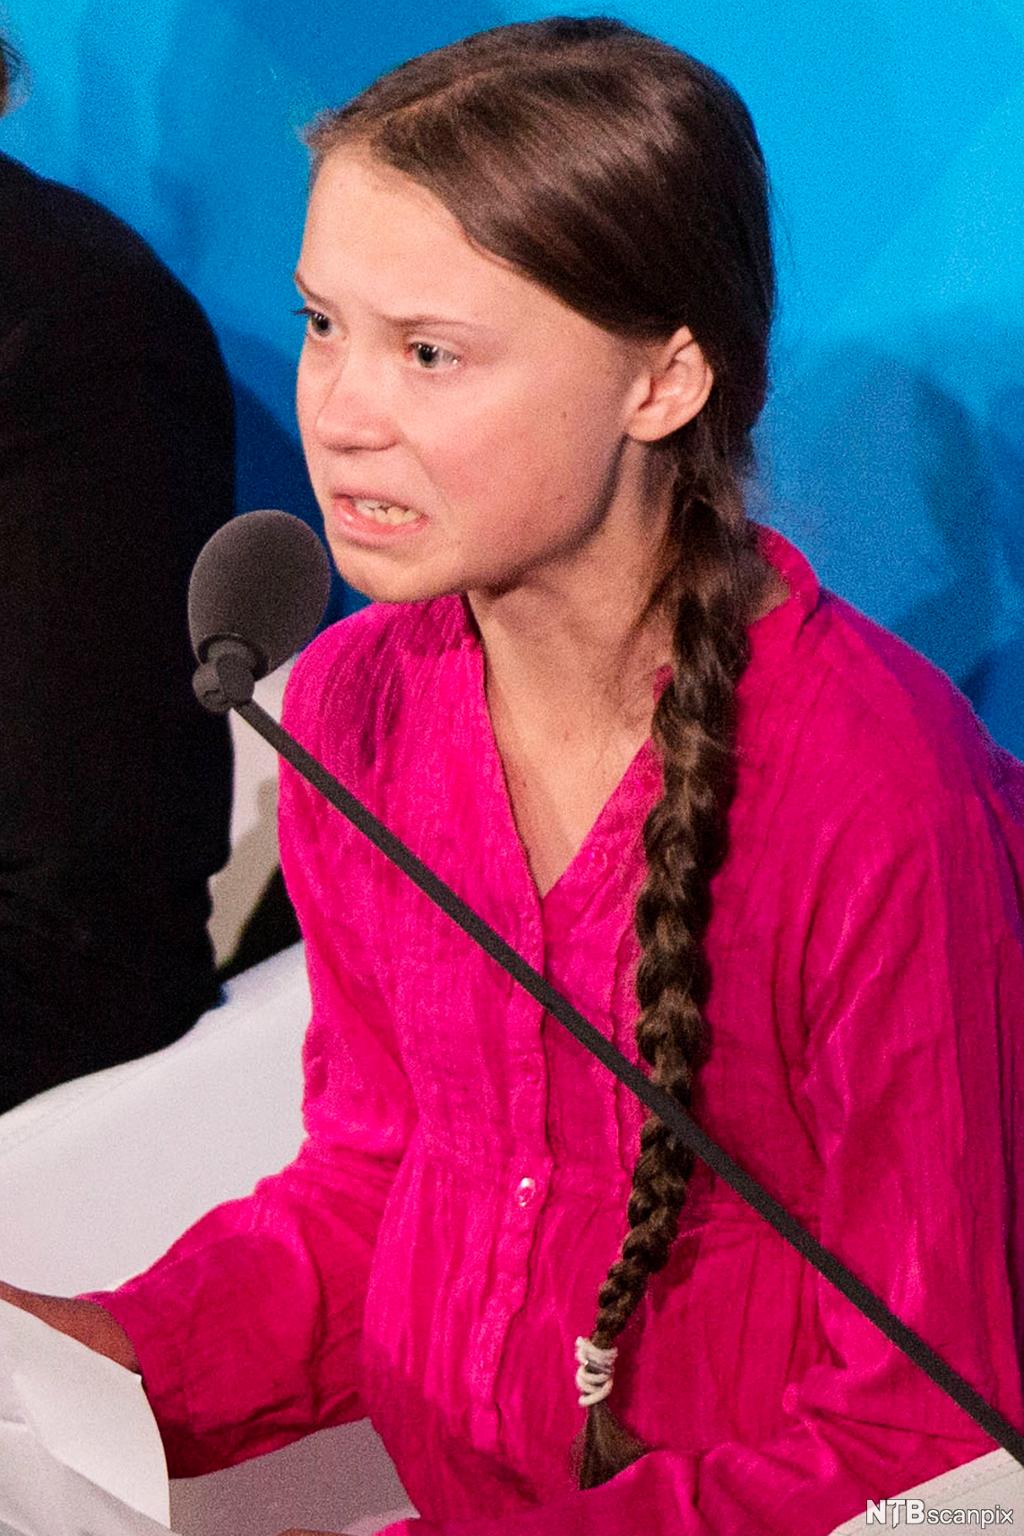 Greta Thunberg holder tale i FN. Ansiktsuttrykket hennes viser vrede og fortvilese over situasjonen hun taler om. Hun er kledd i rosa, og håret er fletta i ei lang flette.